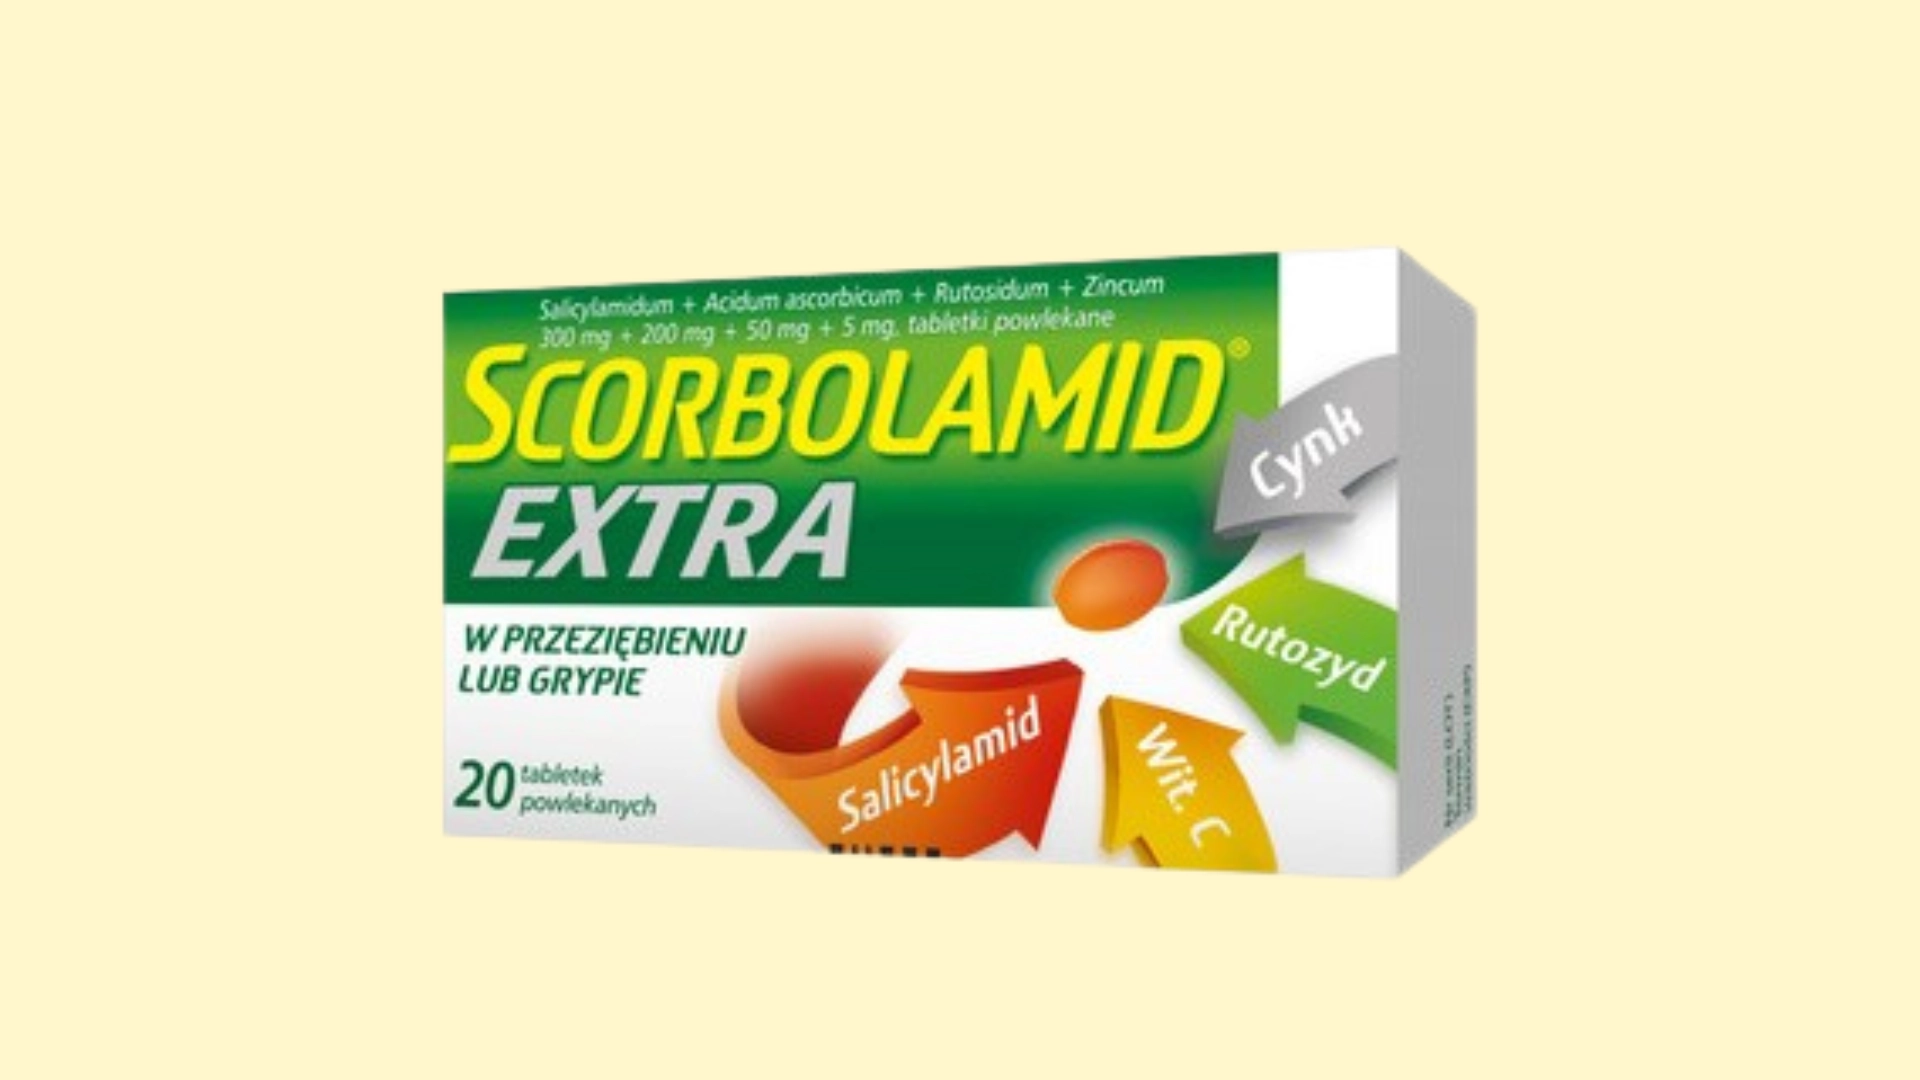 Scorbolamid EXTRA E recepta  recepta online z konsultacją | cena  dawkowanie  przeciwwskazania